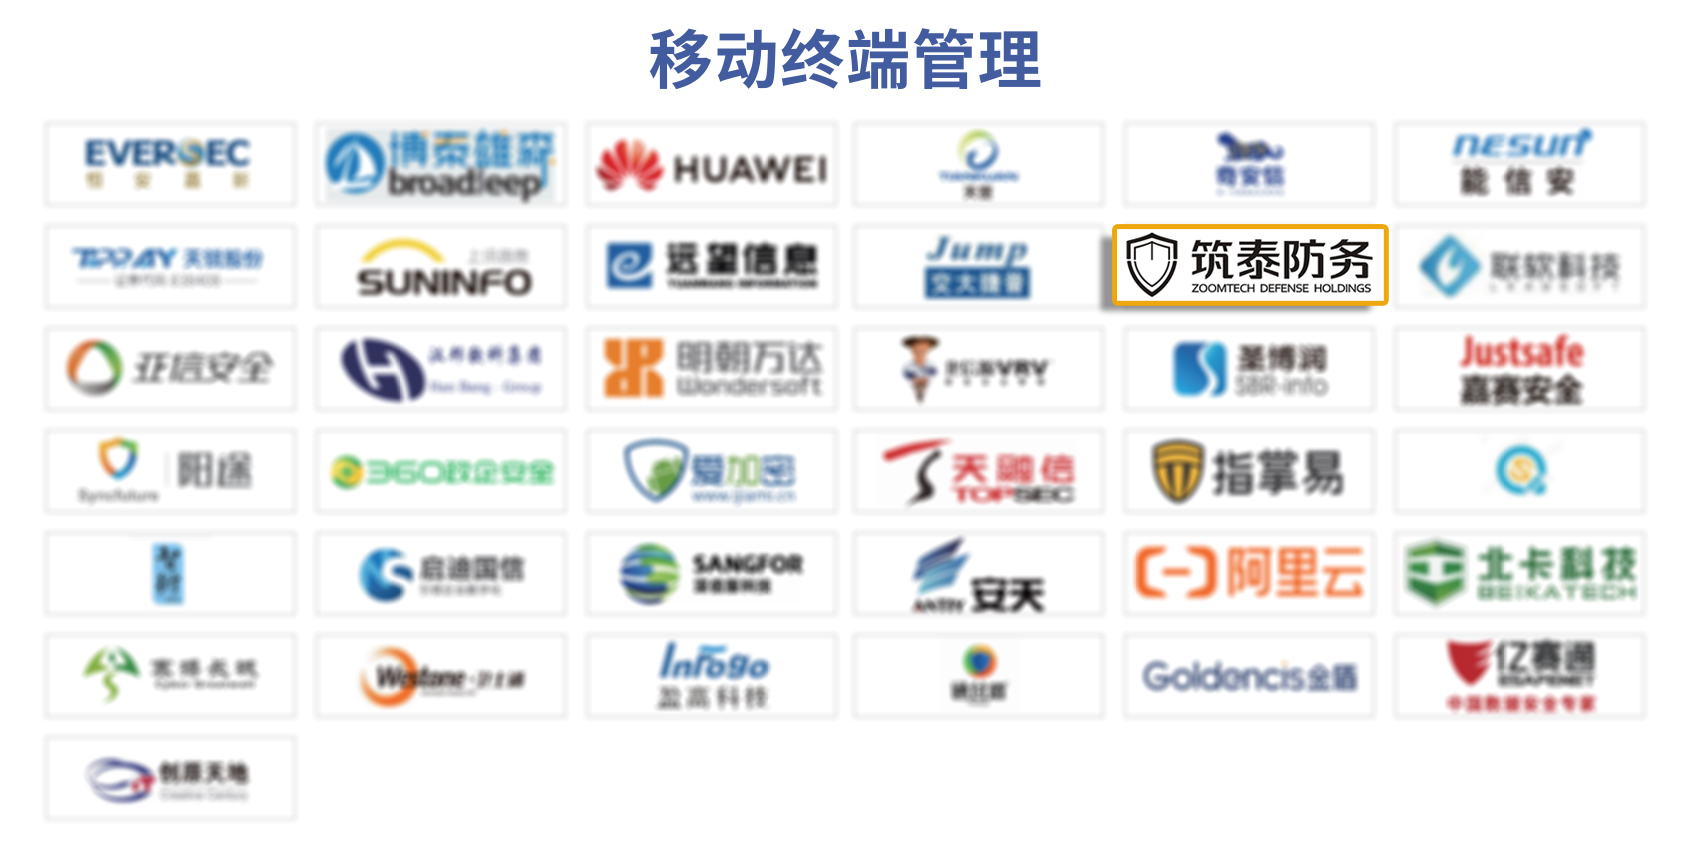 筑泰三次登榜FreeBuf《CCSIP 中国网络安全产业全景图》